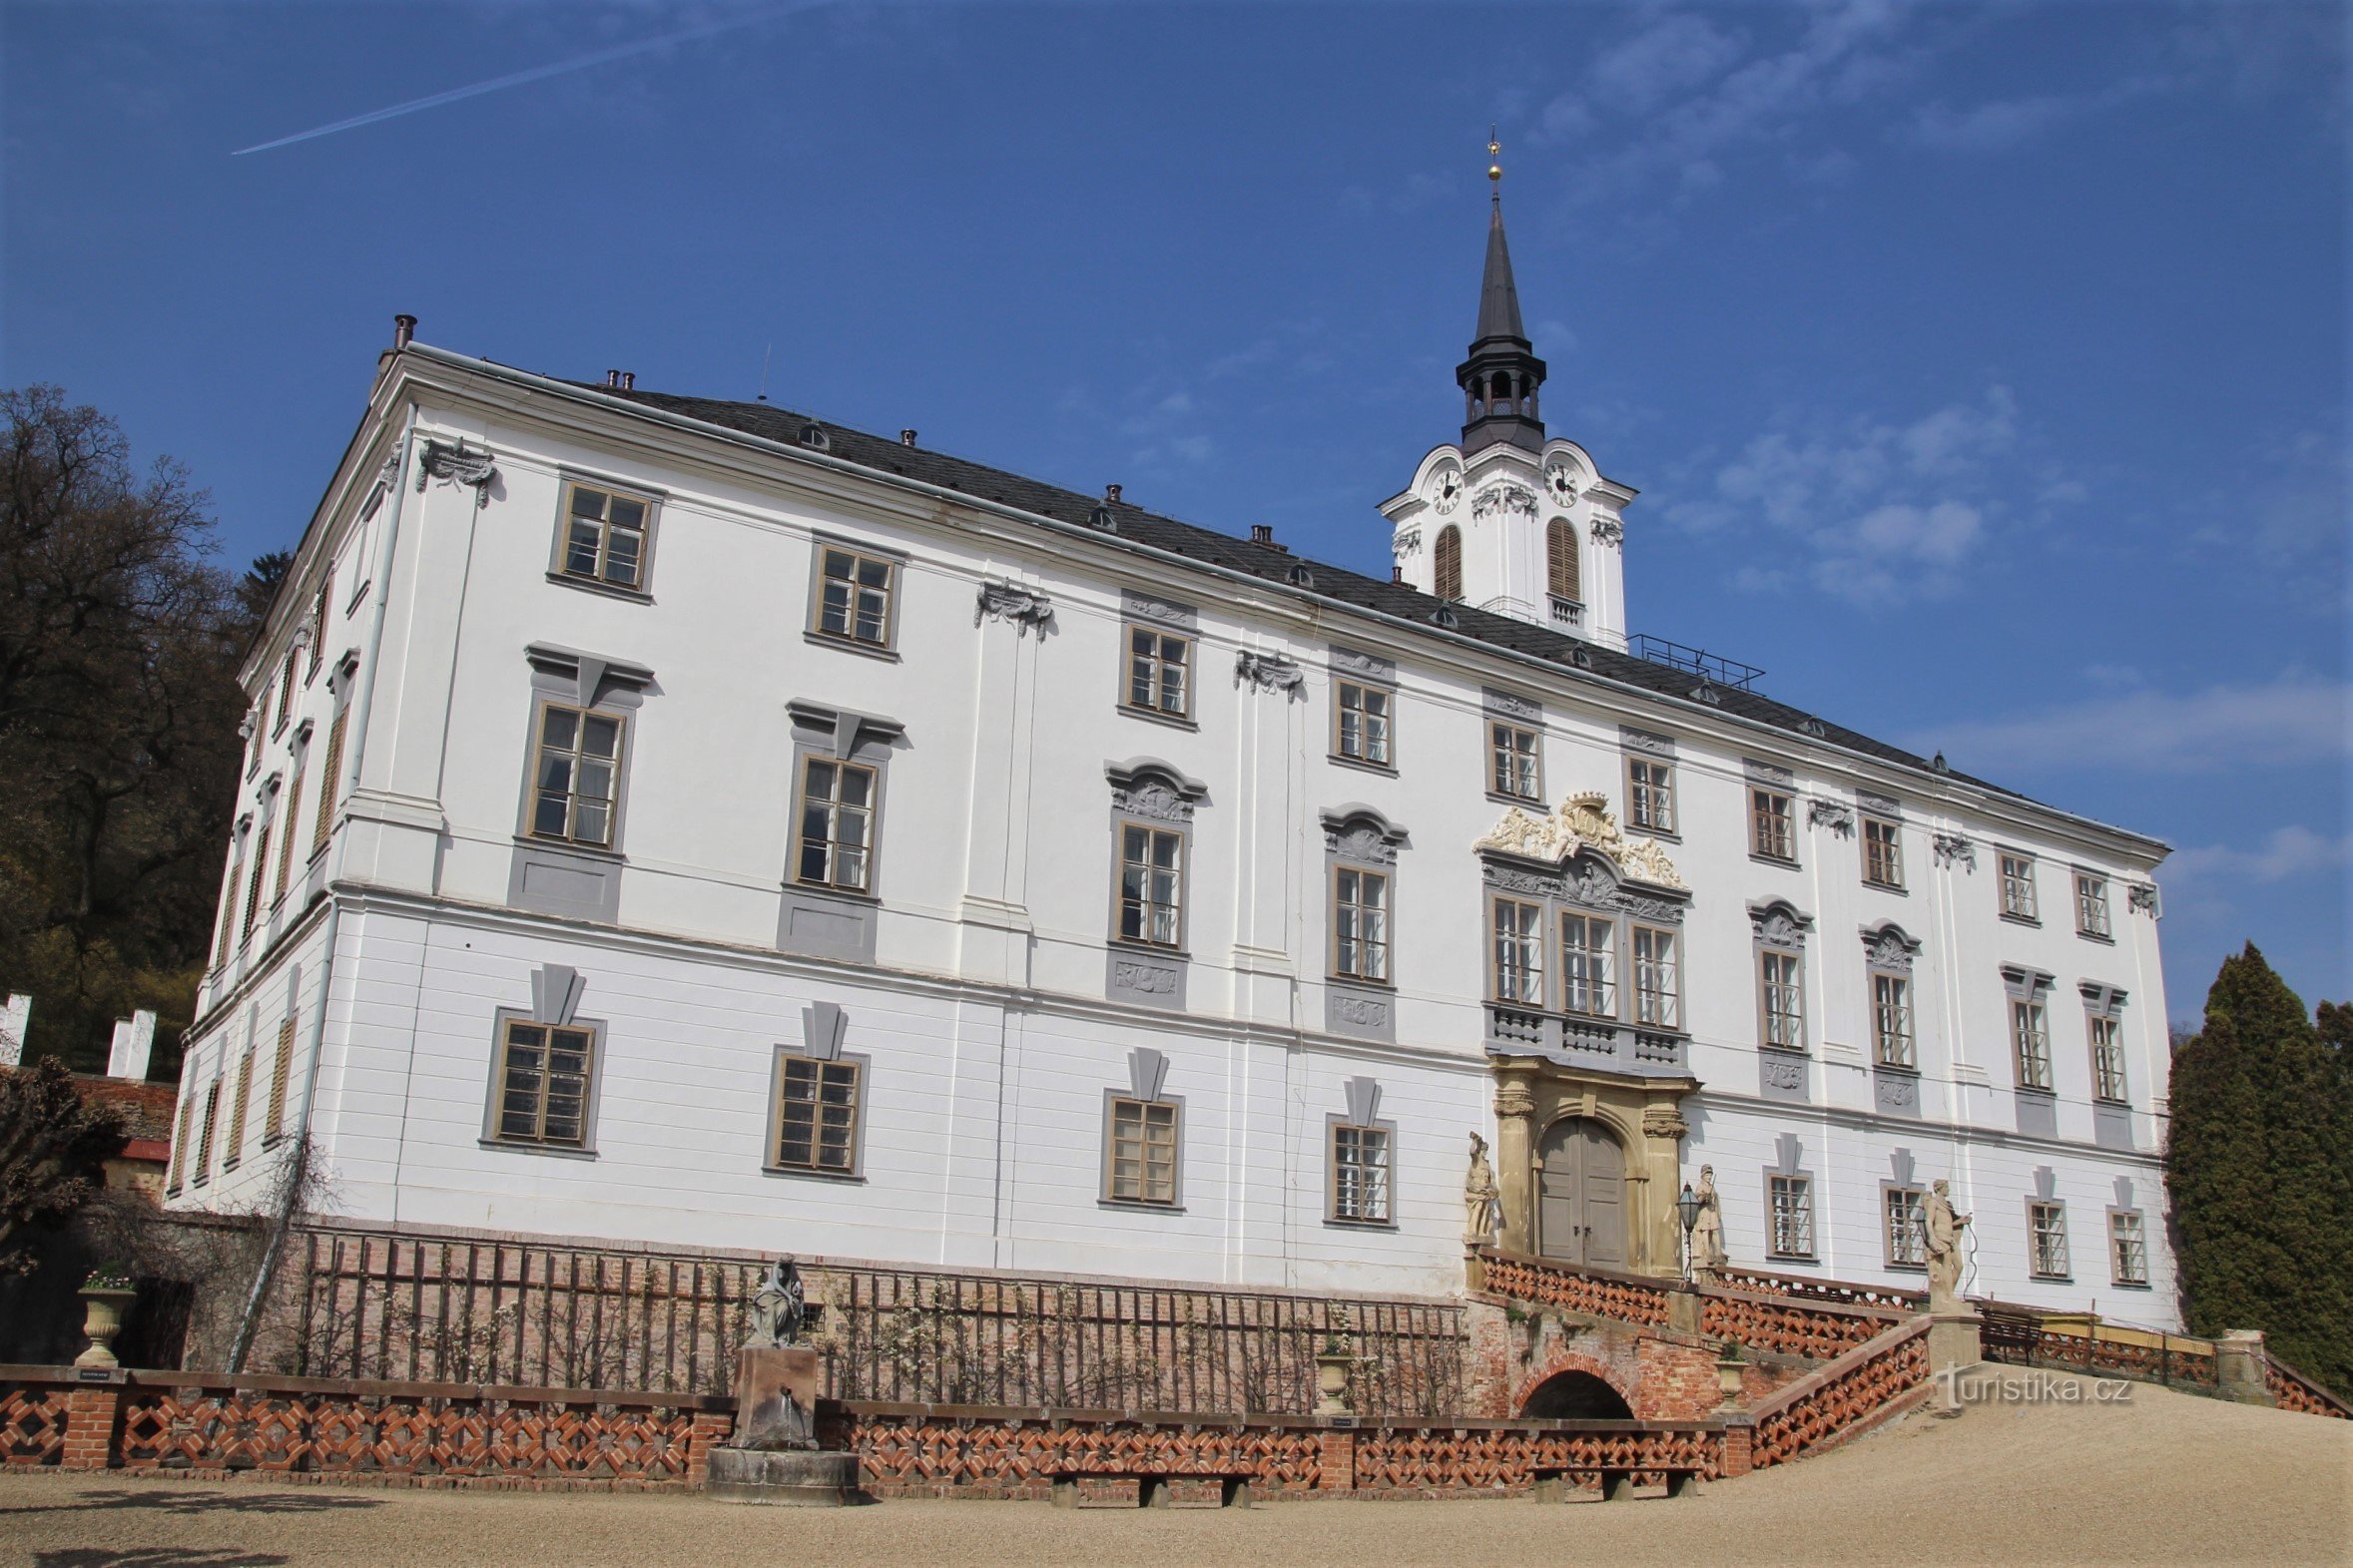 Eingangshof von Schloss Lysice